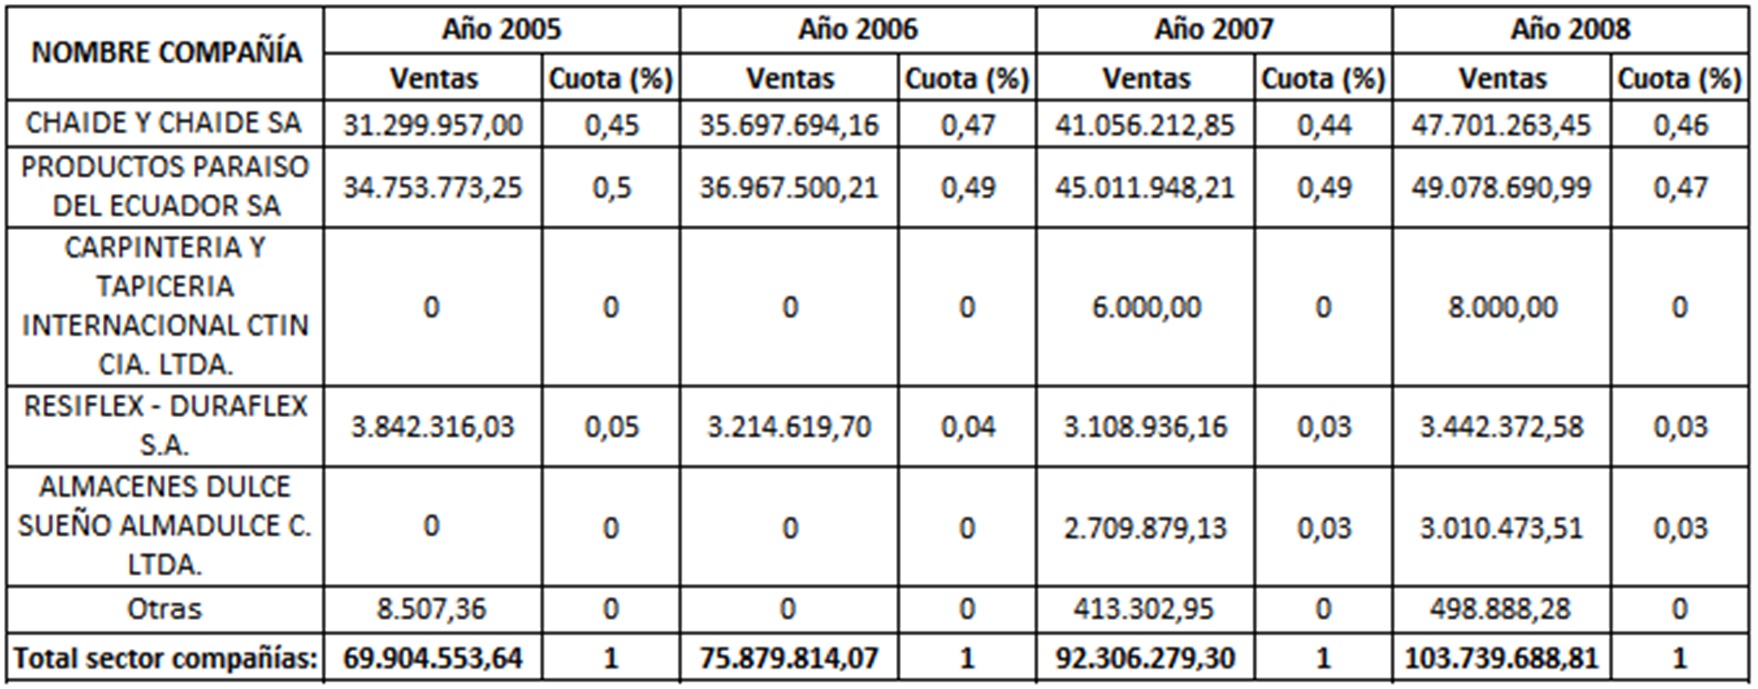  Ventas y cuota de mercado de las
empresas dedicadas a la fabricación de colchones en Ecuador. Período 2005-2008